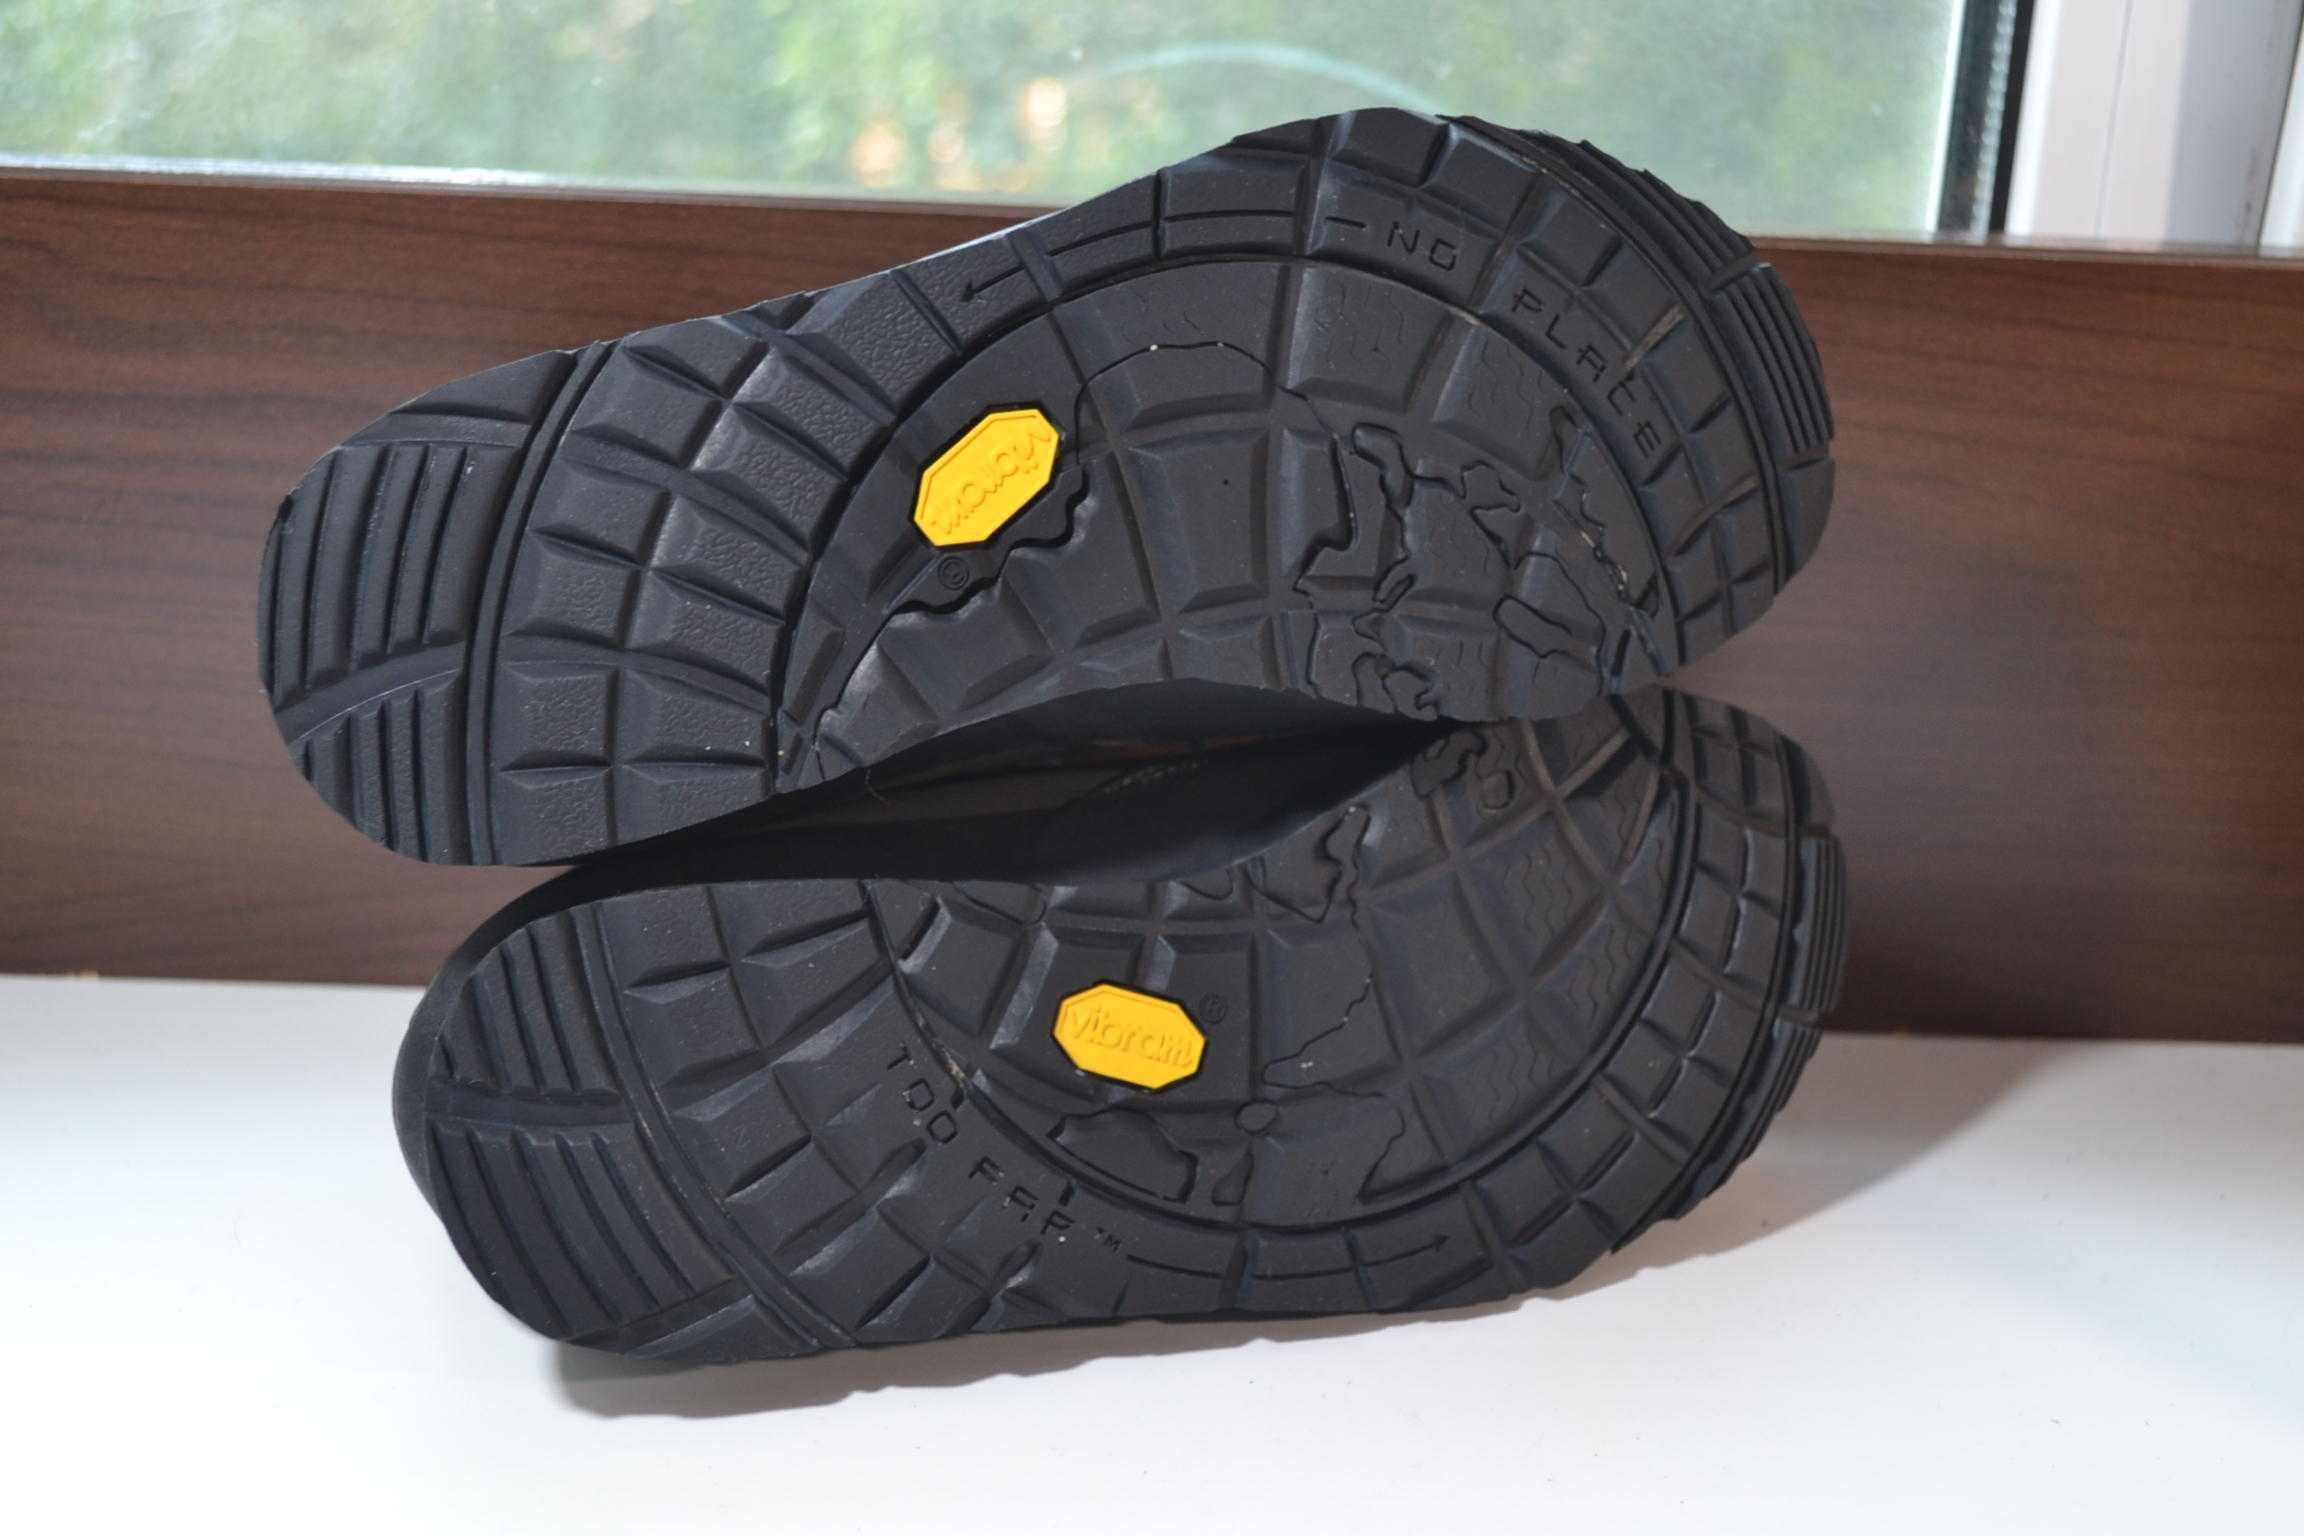 Ботинки Scarpa Aspen GTX 39р кожаные gore-tex трекинговые походные